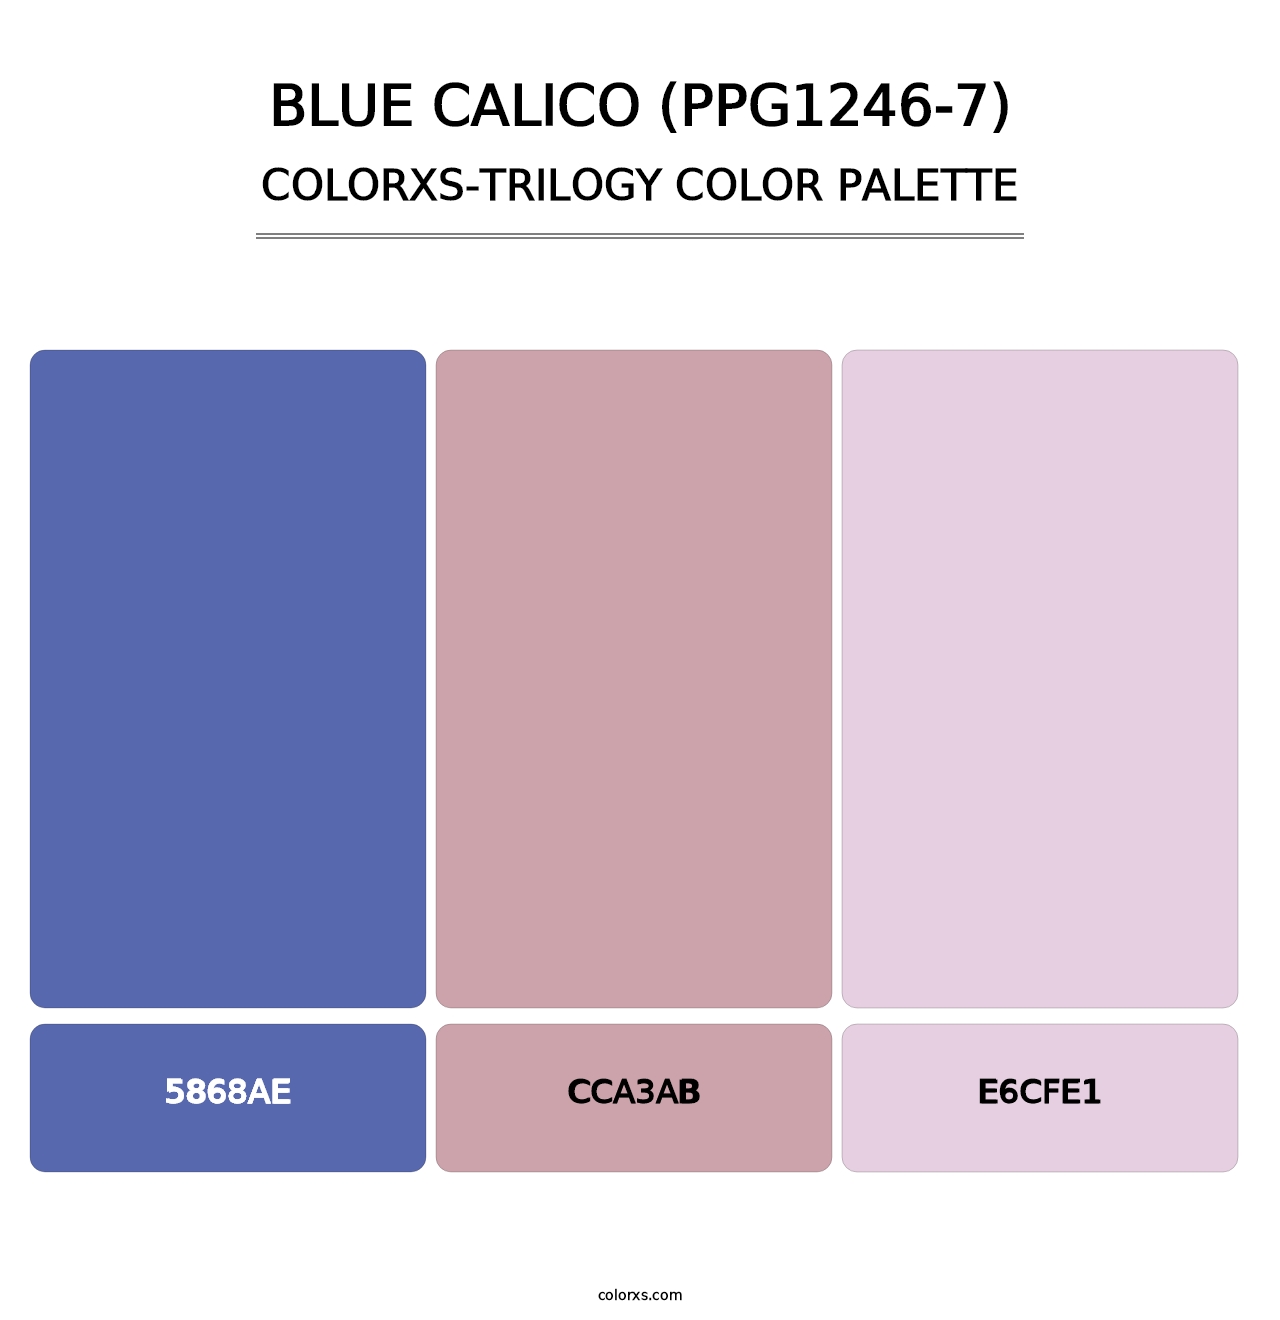 Blue Calico (PPG1246-7) - Colorxs Trilogy Palette